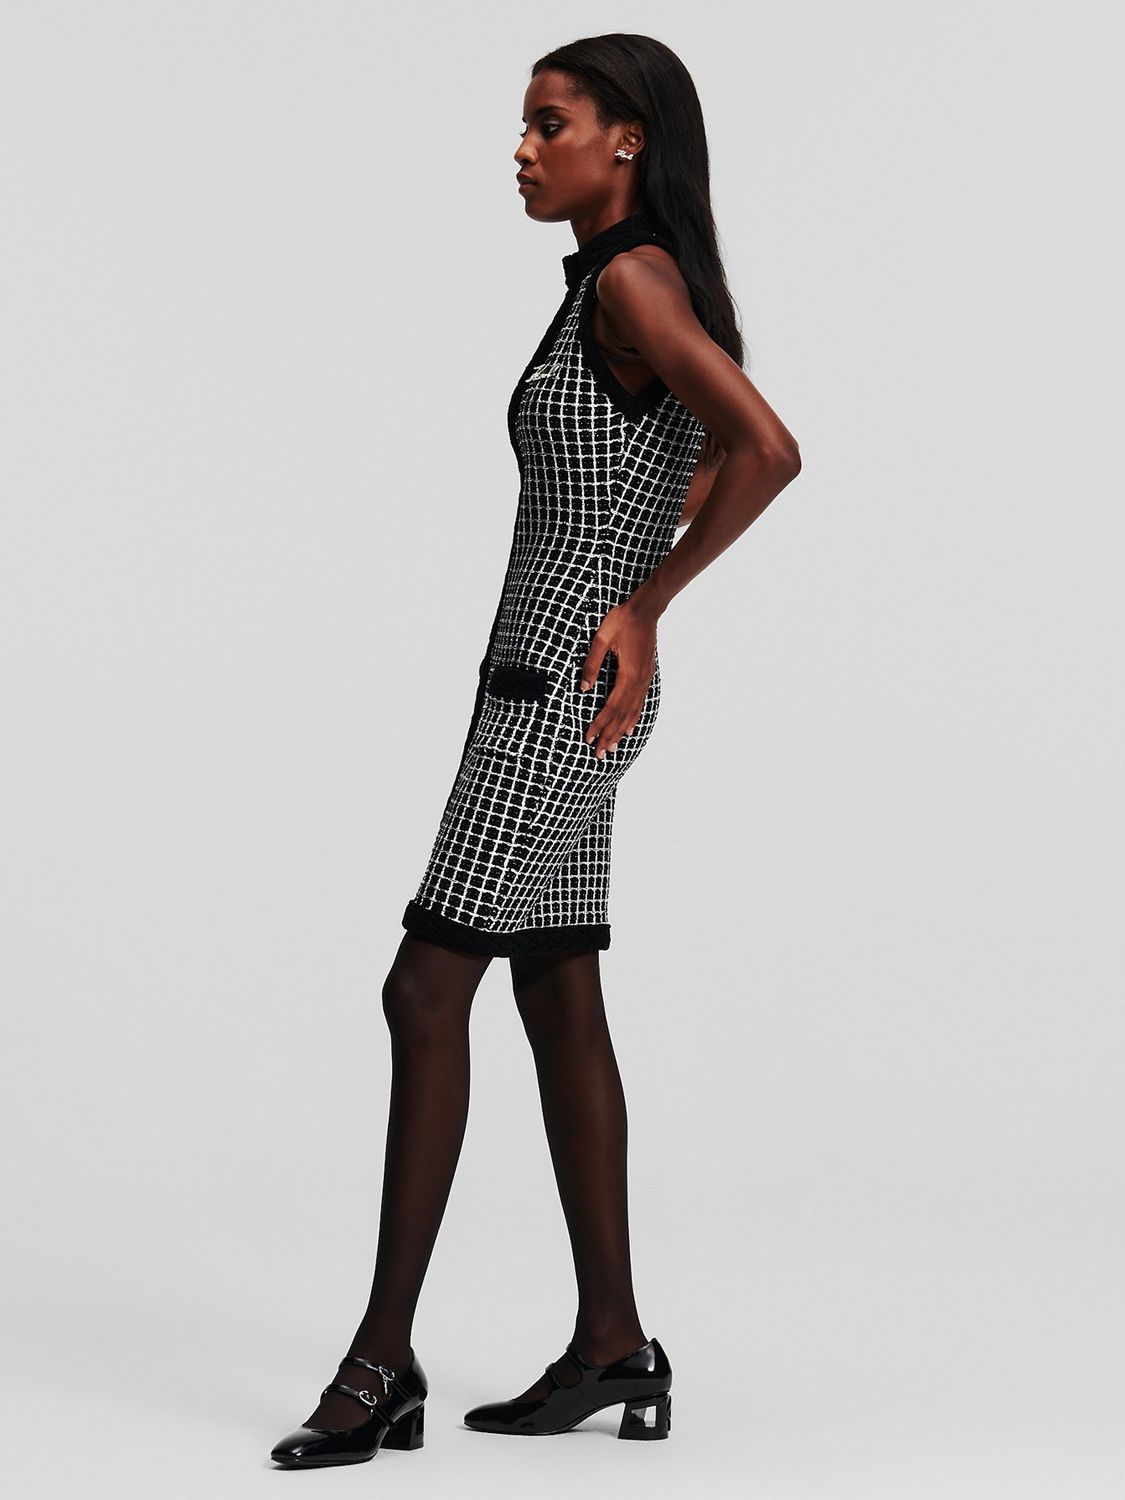 KARL LAGERFELD Cotton Blend Knit Dress, 989 Black/Silver, S